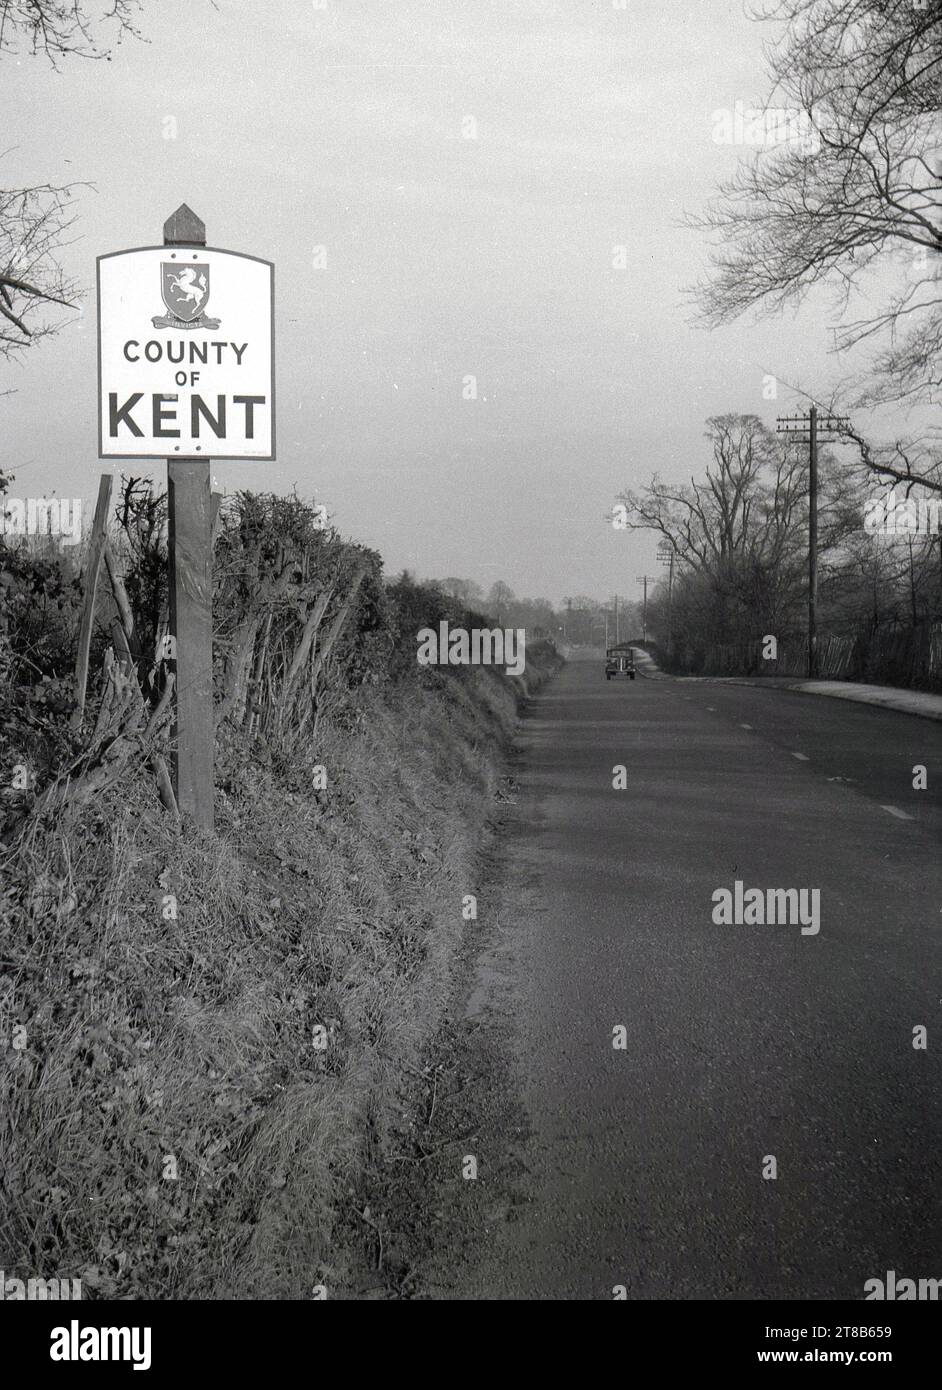 1950, historique, sur une route rurale, un panneau routier pour le comté de Kent, Angleterre, Royaume-Uni, un comté dans le sud-est de l'Angleterre, connu comme «le jardin de l'Angleterre» en raison de ses riches terres agricoles, de nombreux vergers et jardins de houblon. Une voiture de l'époque sur la route à venir. Banque D'Images